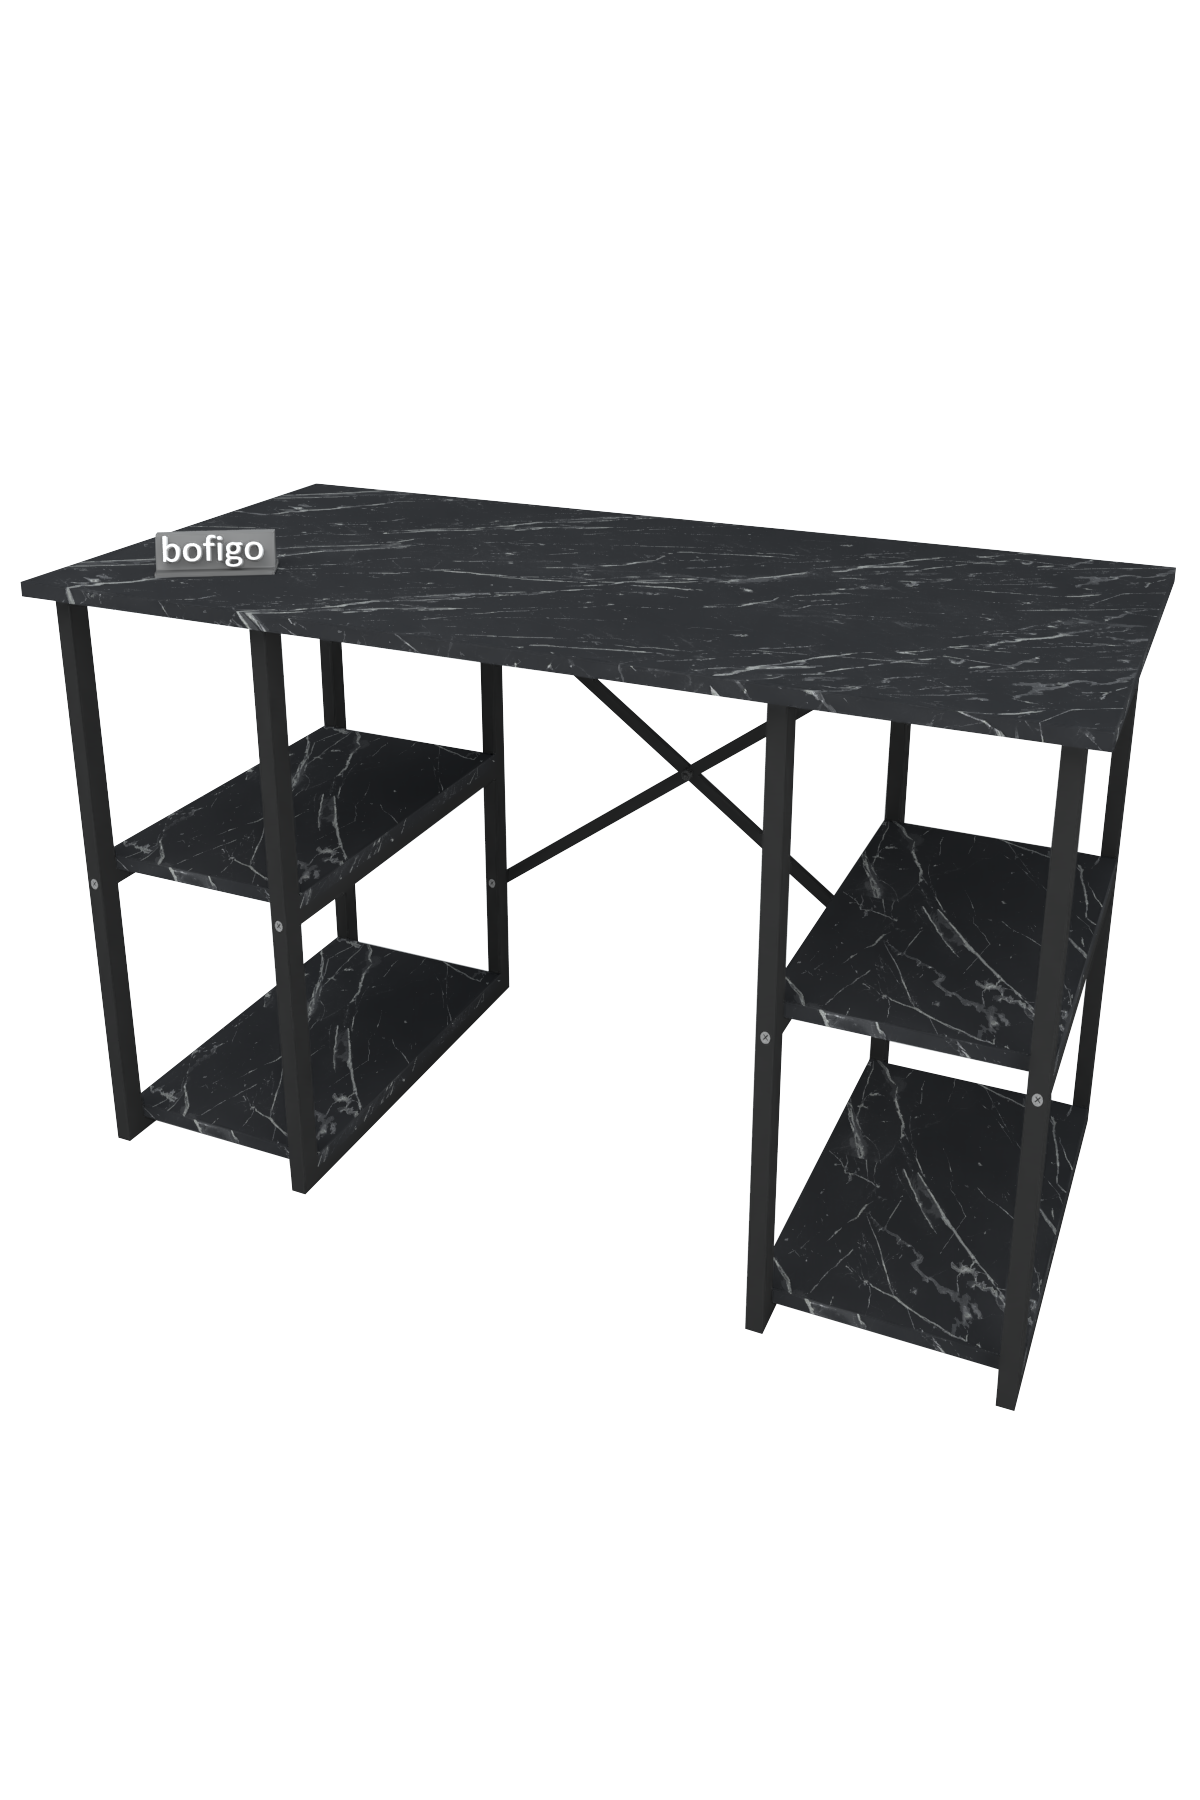 Bofigo 4 Shelf Desk 60x120 cm Bendir